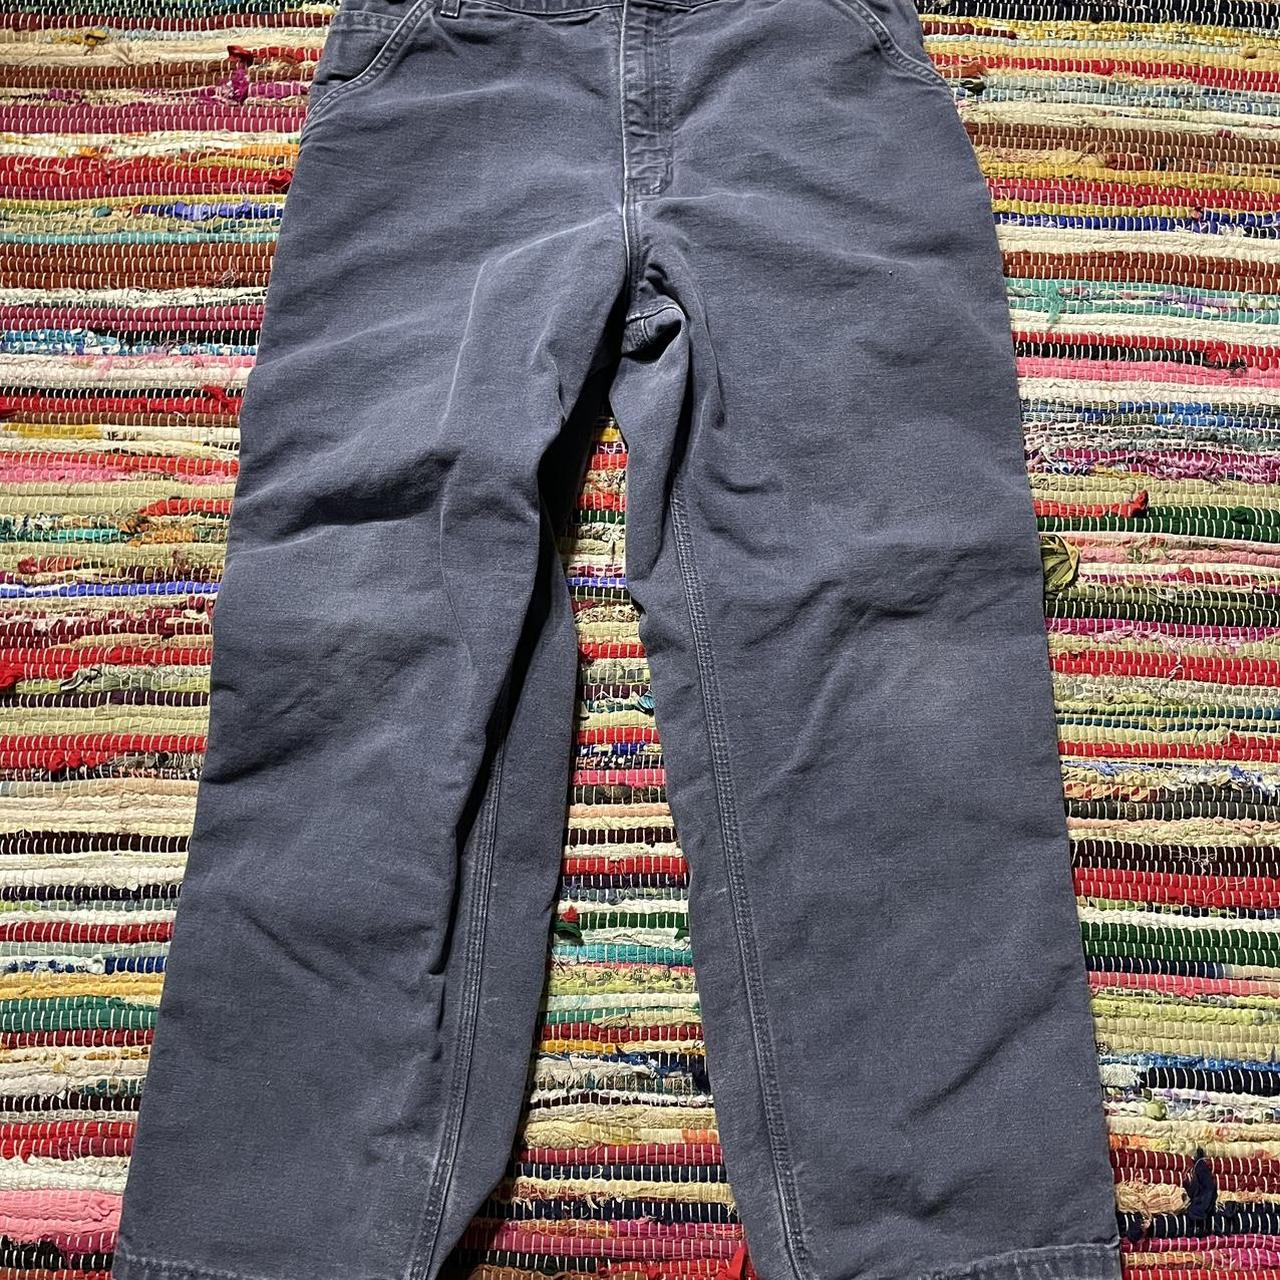 Vintage carhart carpenter jeans 32 x 30 DM BEFORE... - Depop